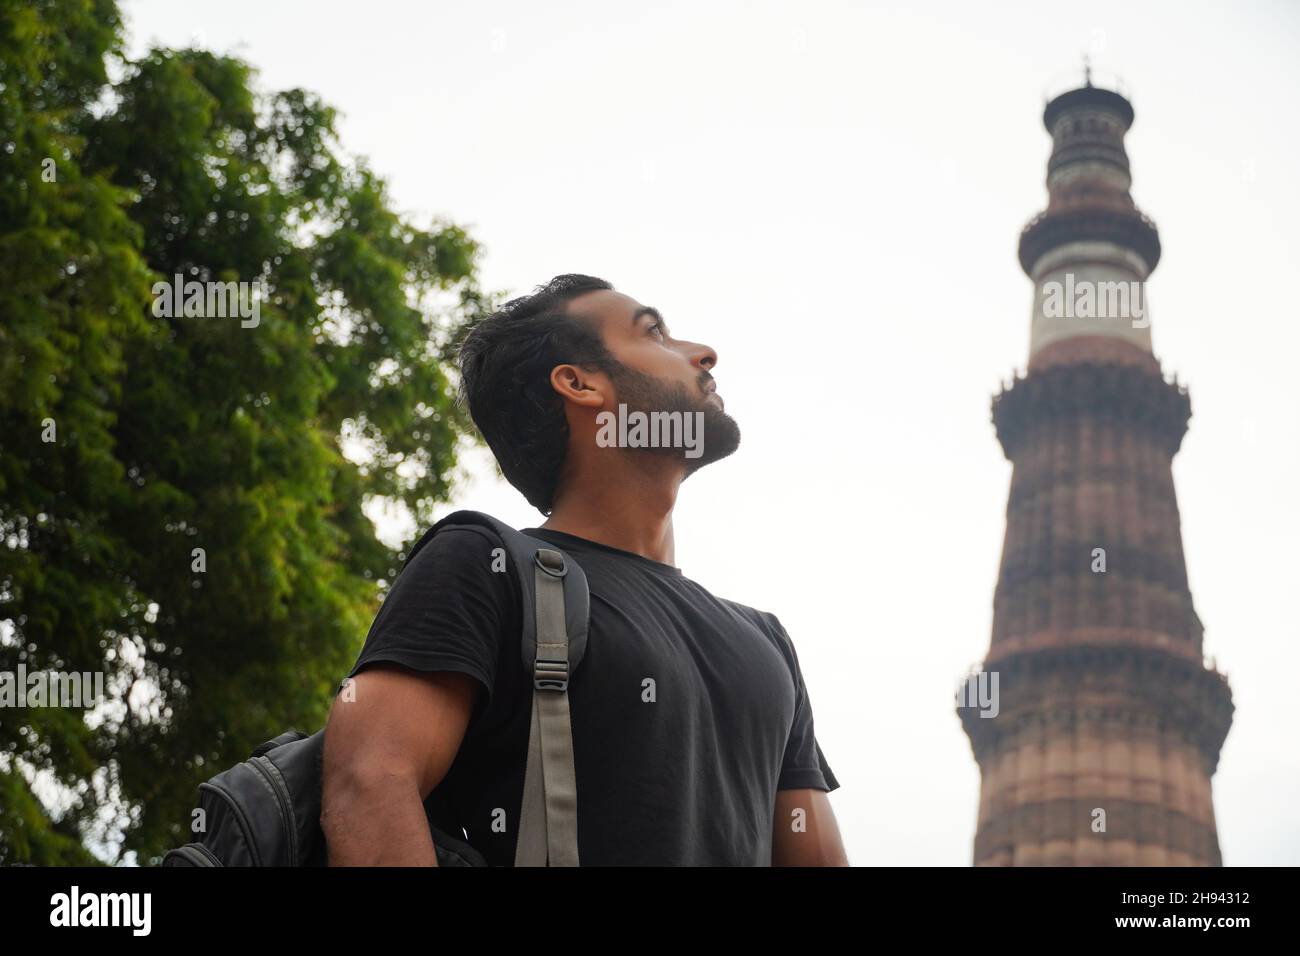 indische junge gutaussehende Mann am historischen Palast qutub minar Reise in indien Bild Stockfoto